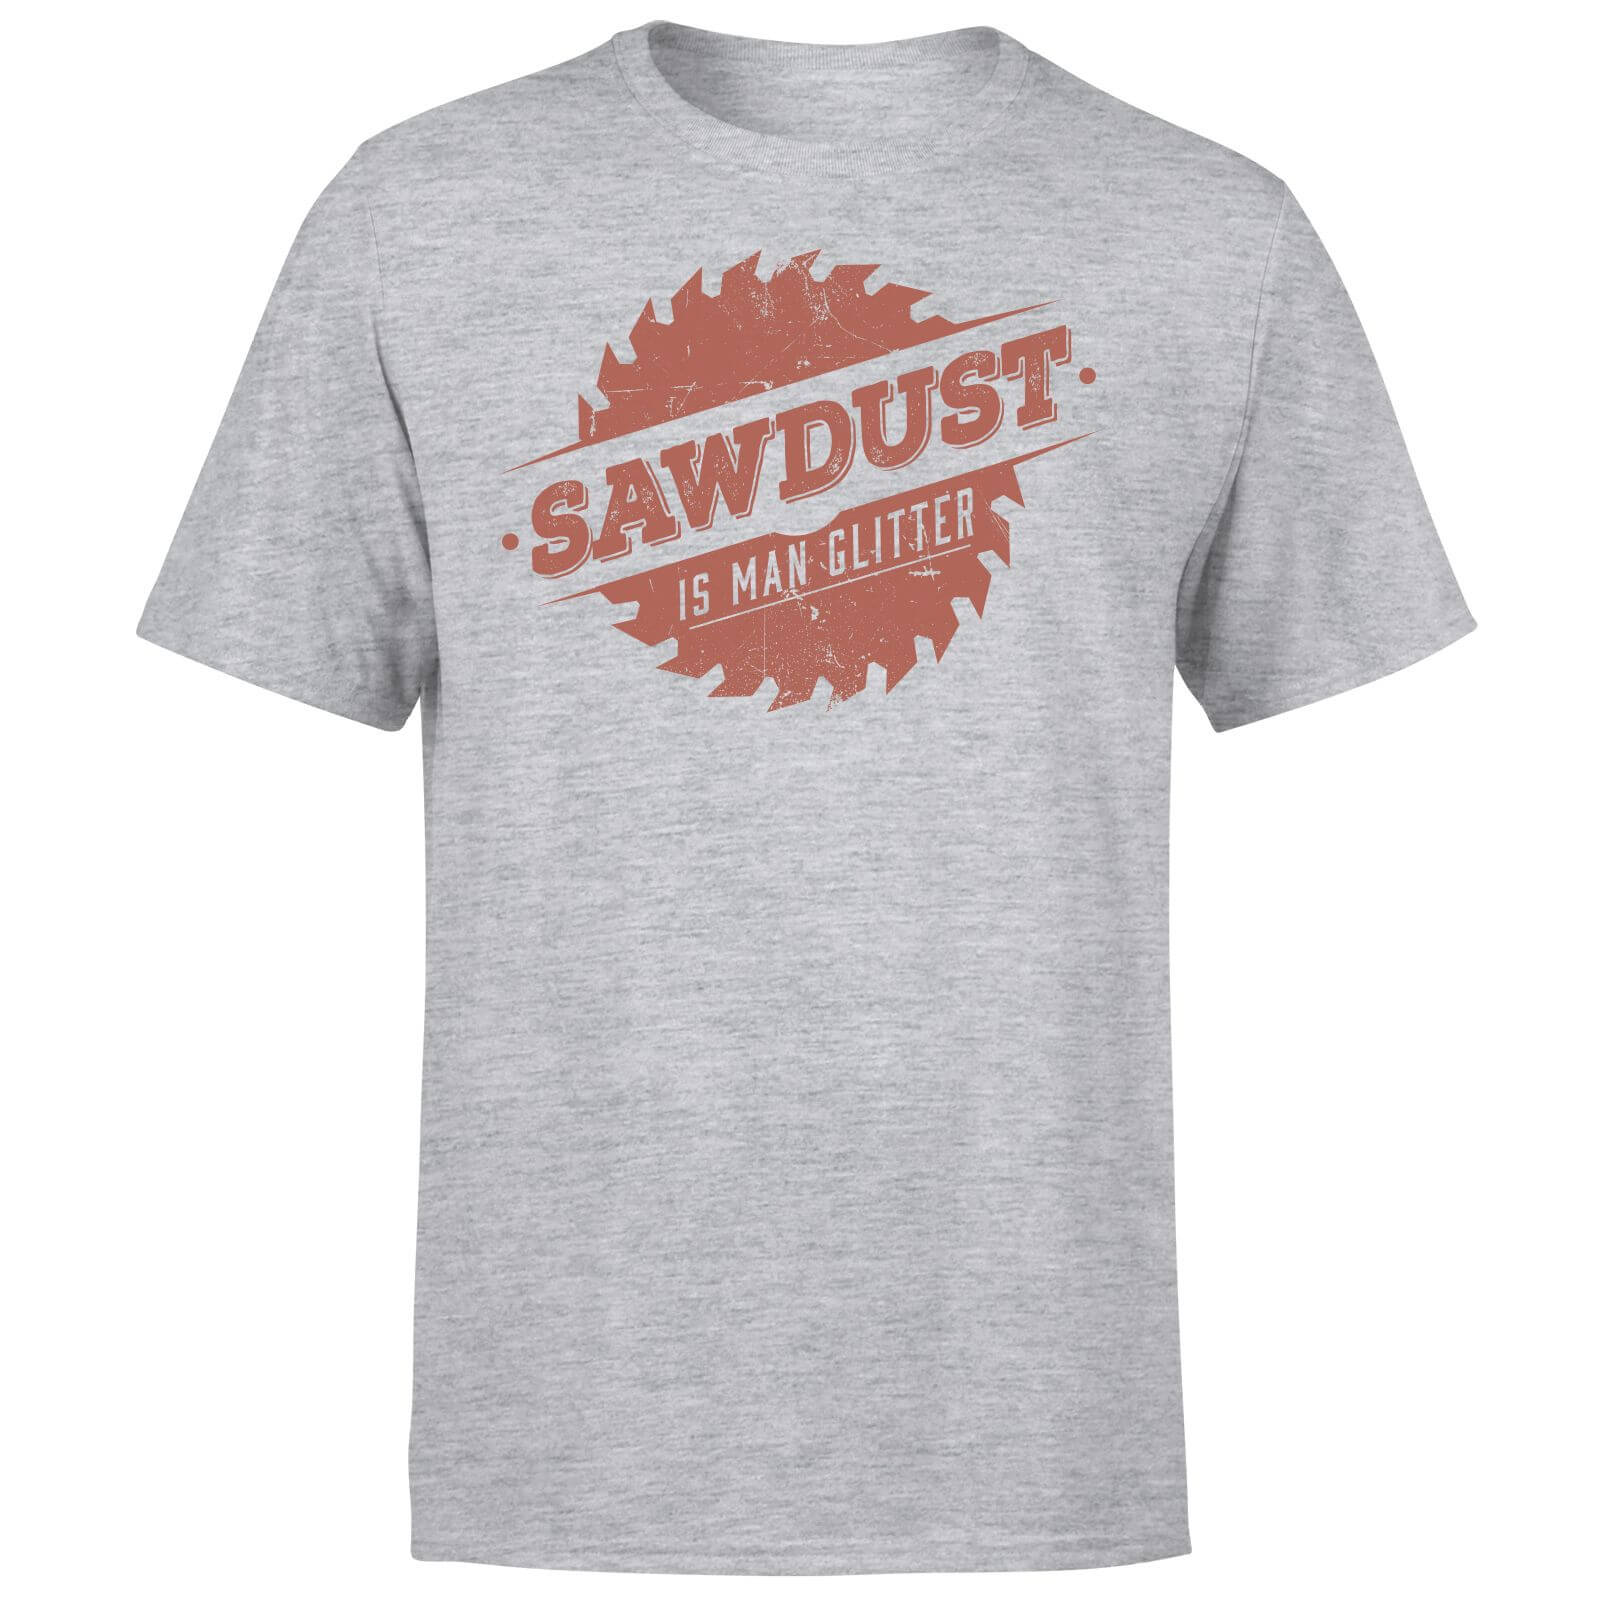 Sawdust is Man Glitter T-Shirt - Grey Merchandise | Zavvi US